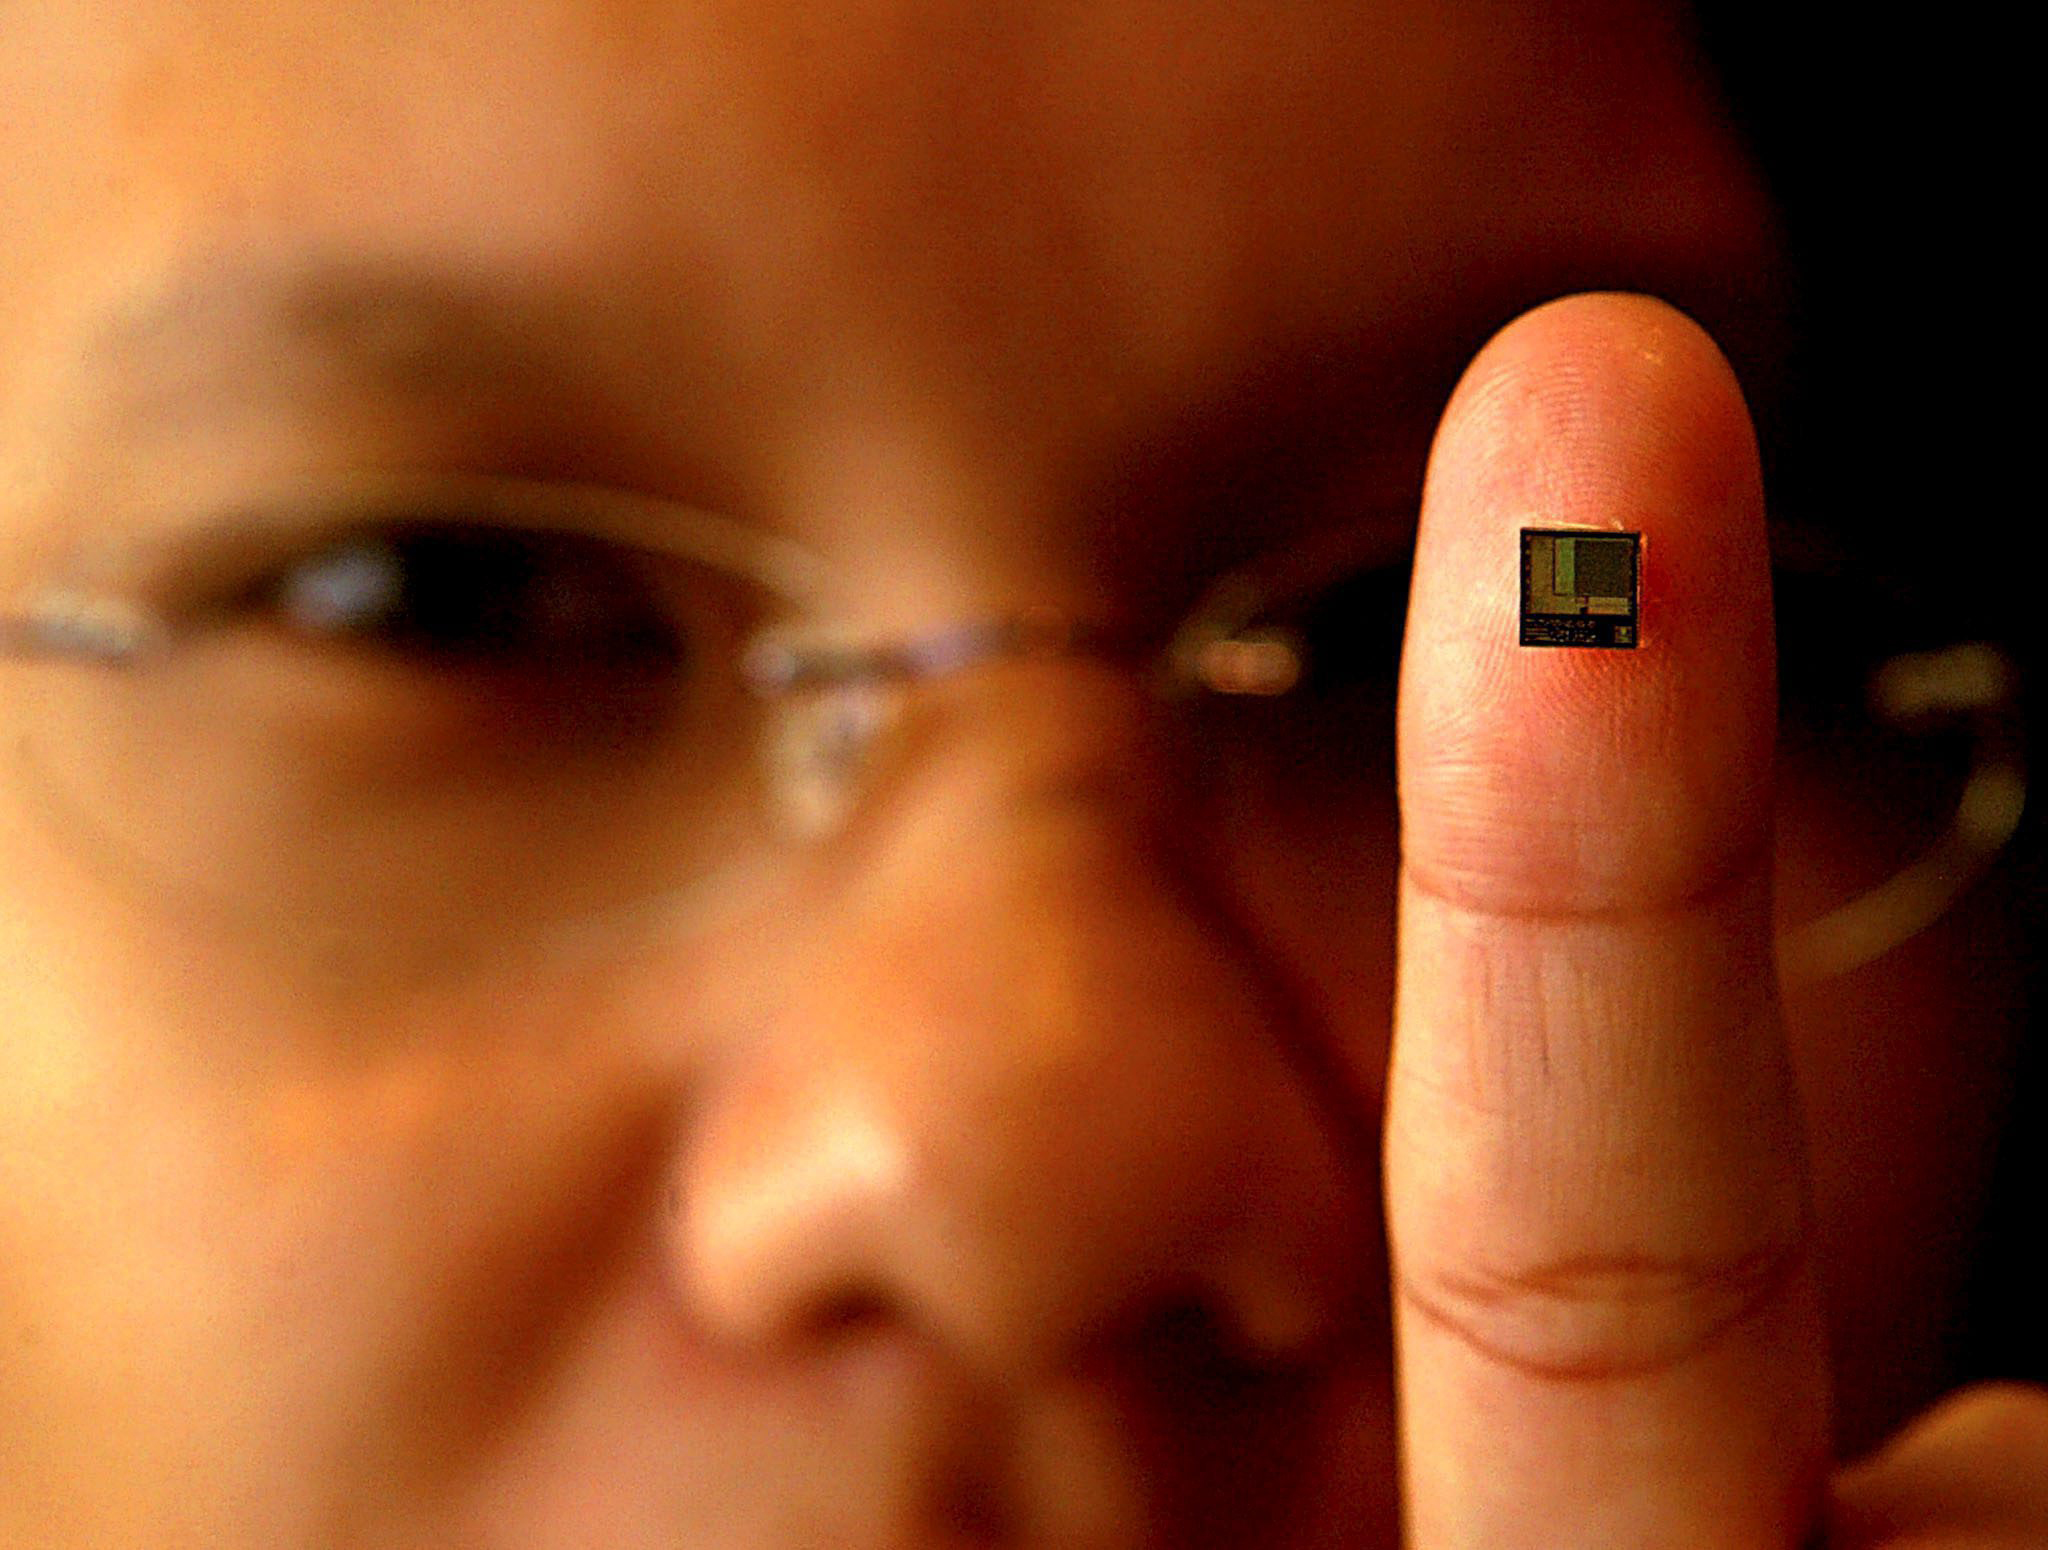 El chip cuenta con tecnología de identificación por radiofrecuencia (RFDI) y una memoria de 868 bytes.